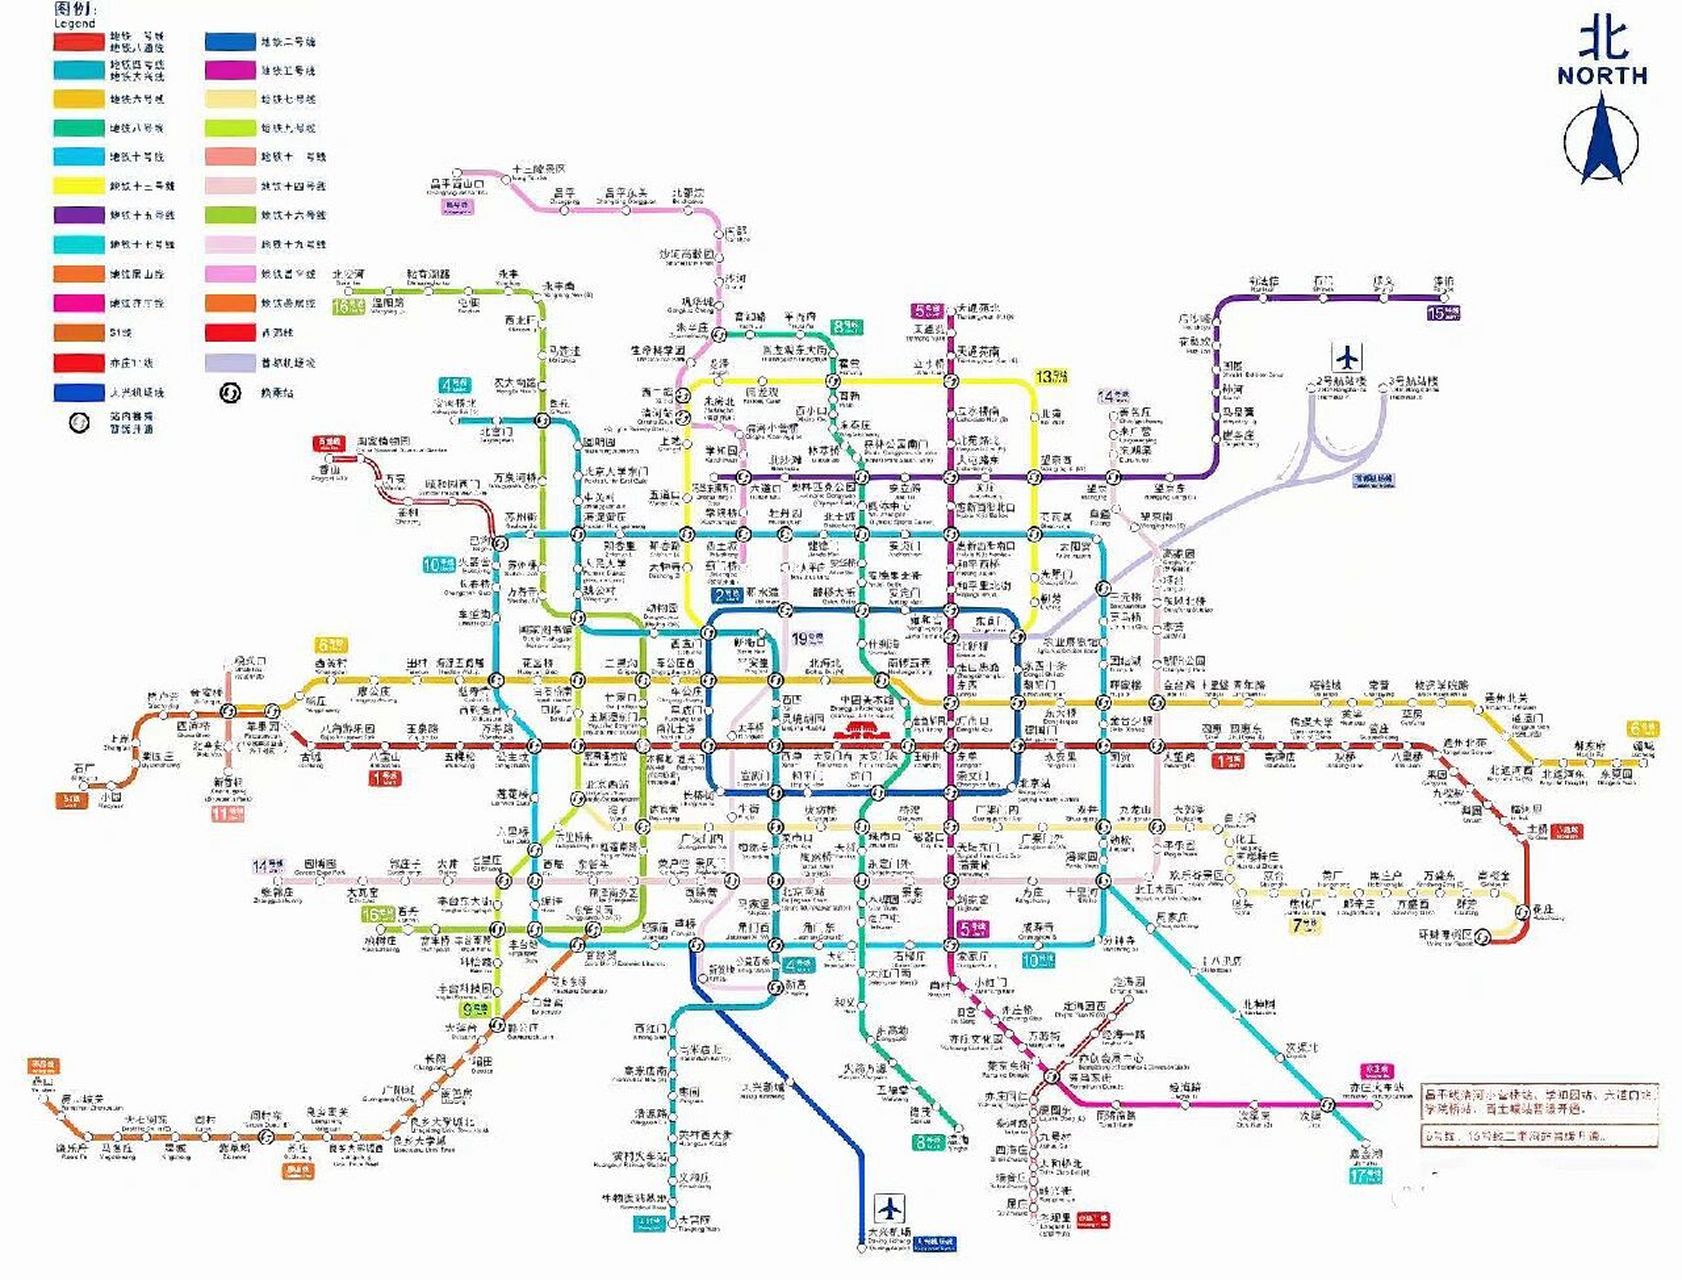 北京地铁线路图2025年图片